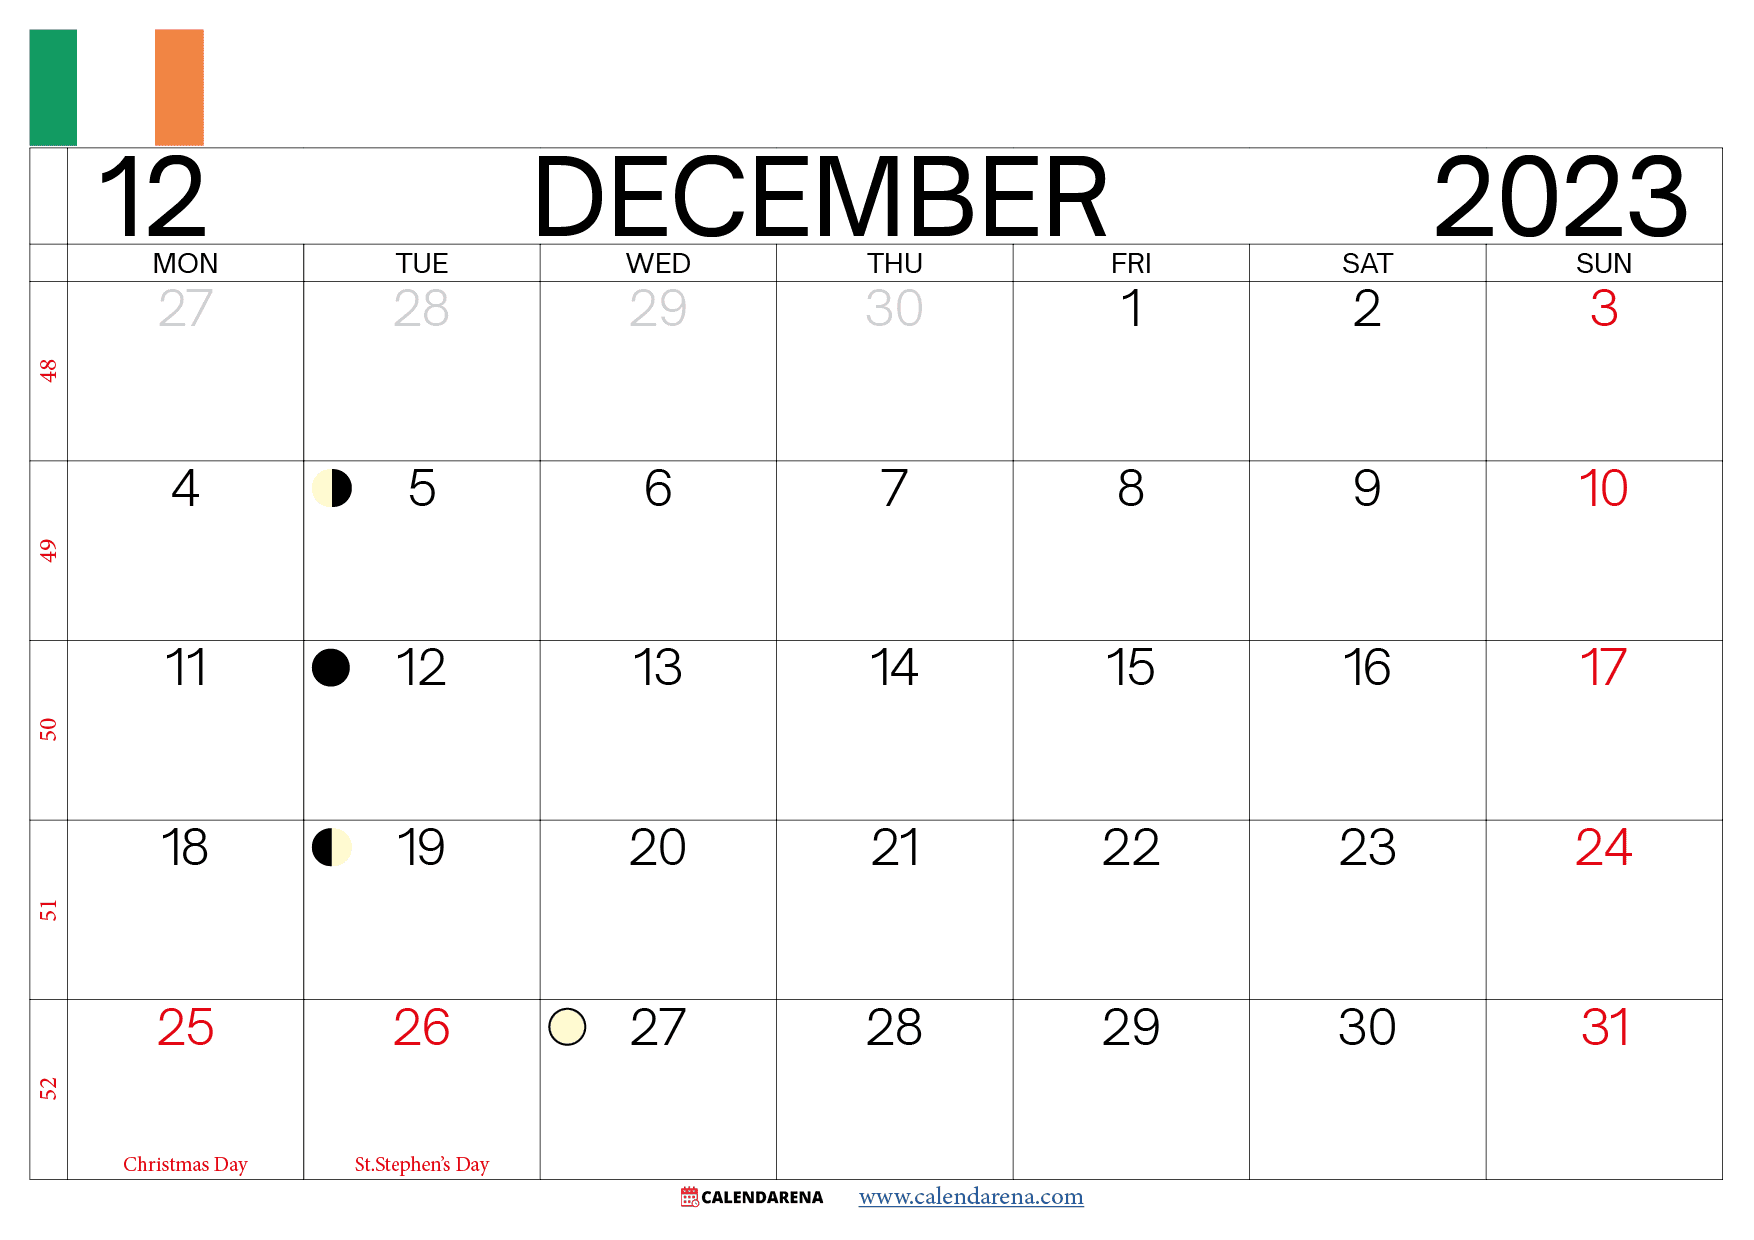 december calendar 2023 ireland